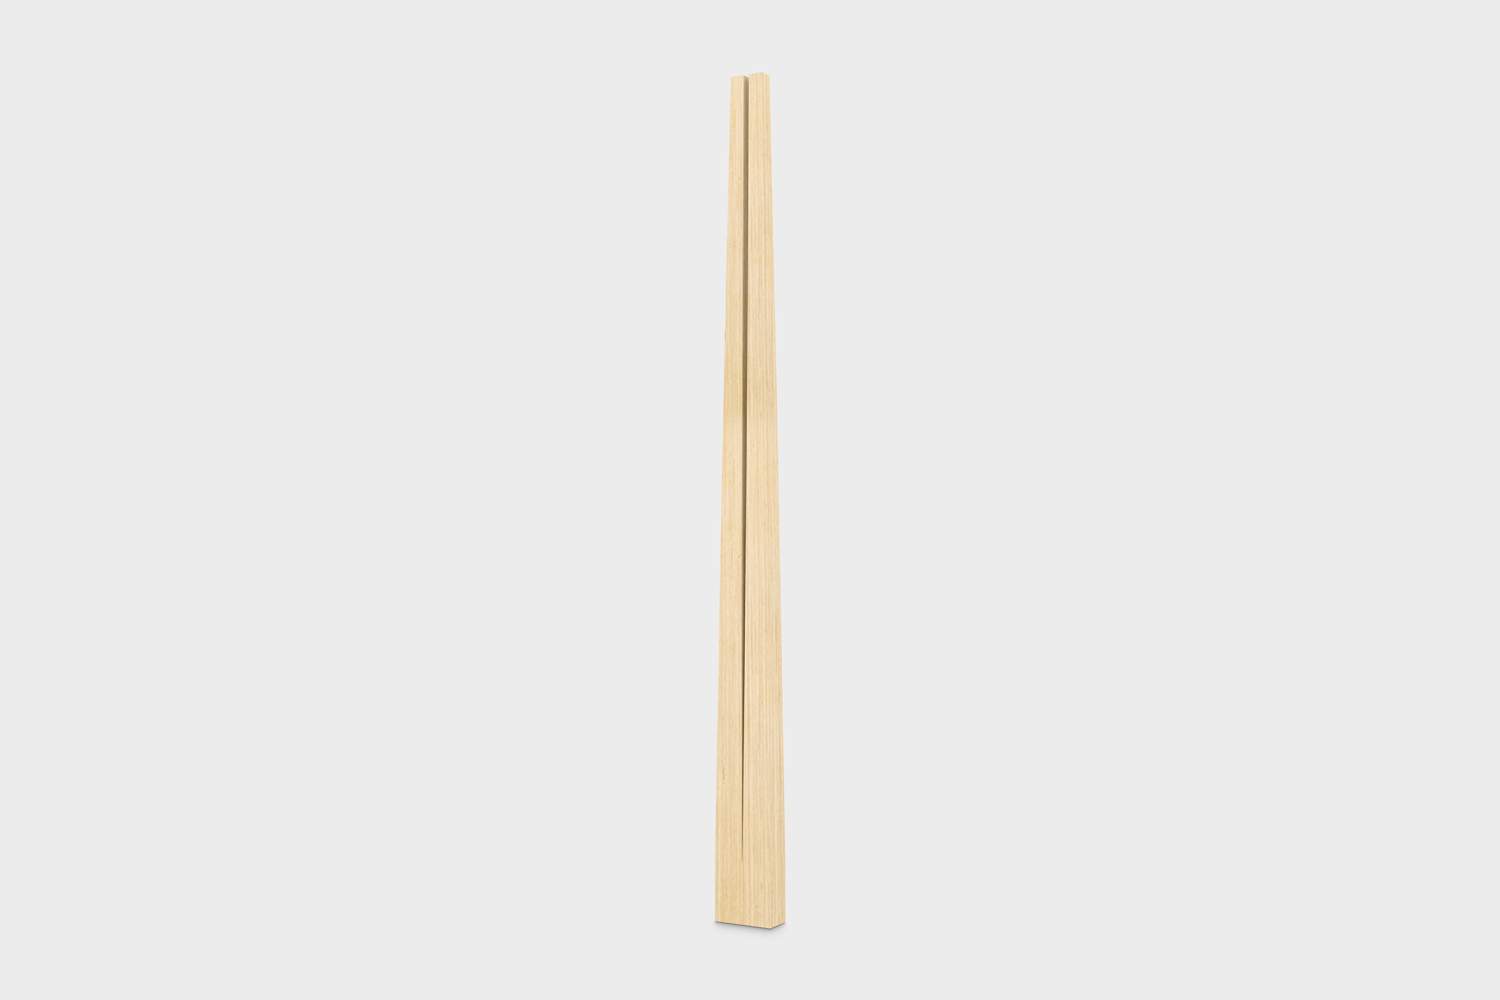 Digital mockup of two wooden chopsticks in open packaging.